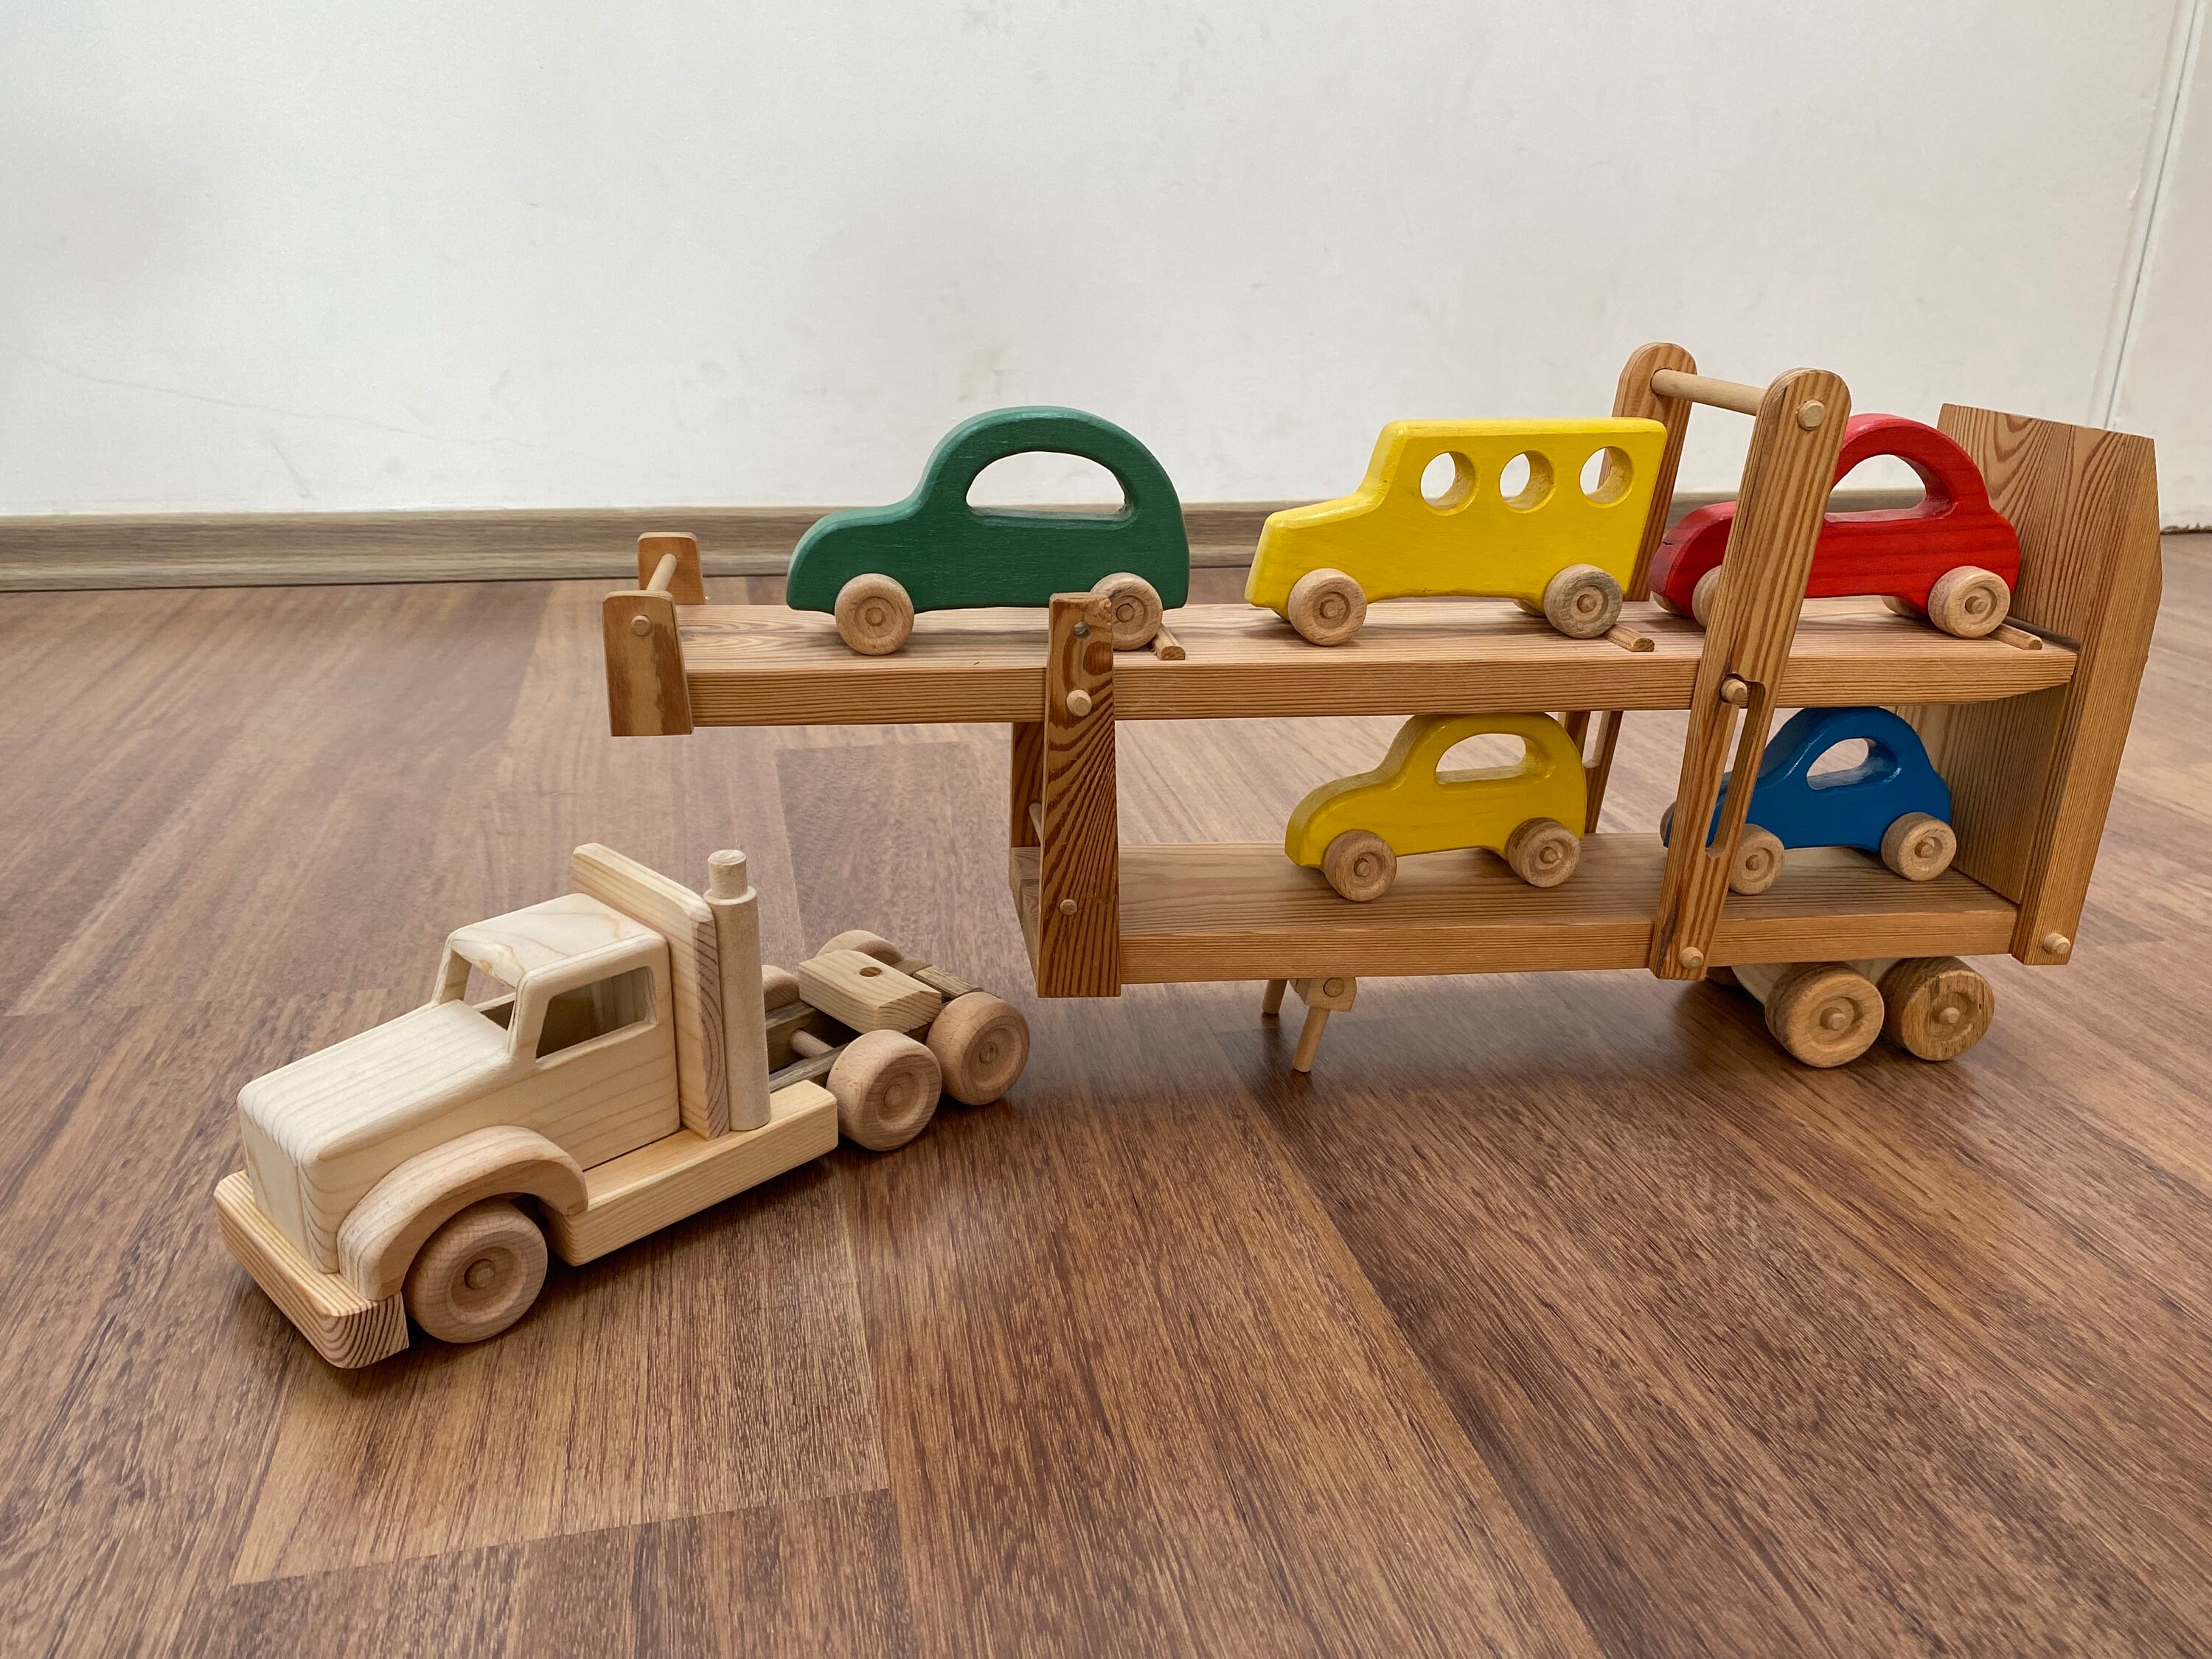 Hailey der Autoschlepper ein hölzerner Spielzeug-Lkw mit beweglichen Rampen  fünf farbige Autos inklusive grün, blau, rot, gelb - .de